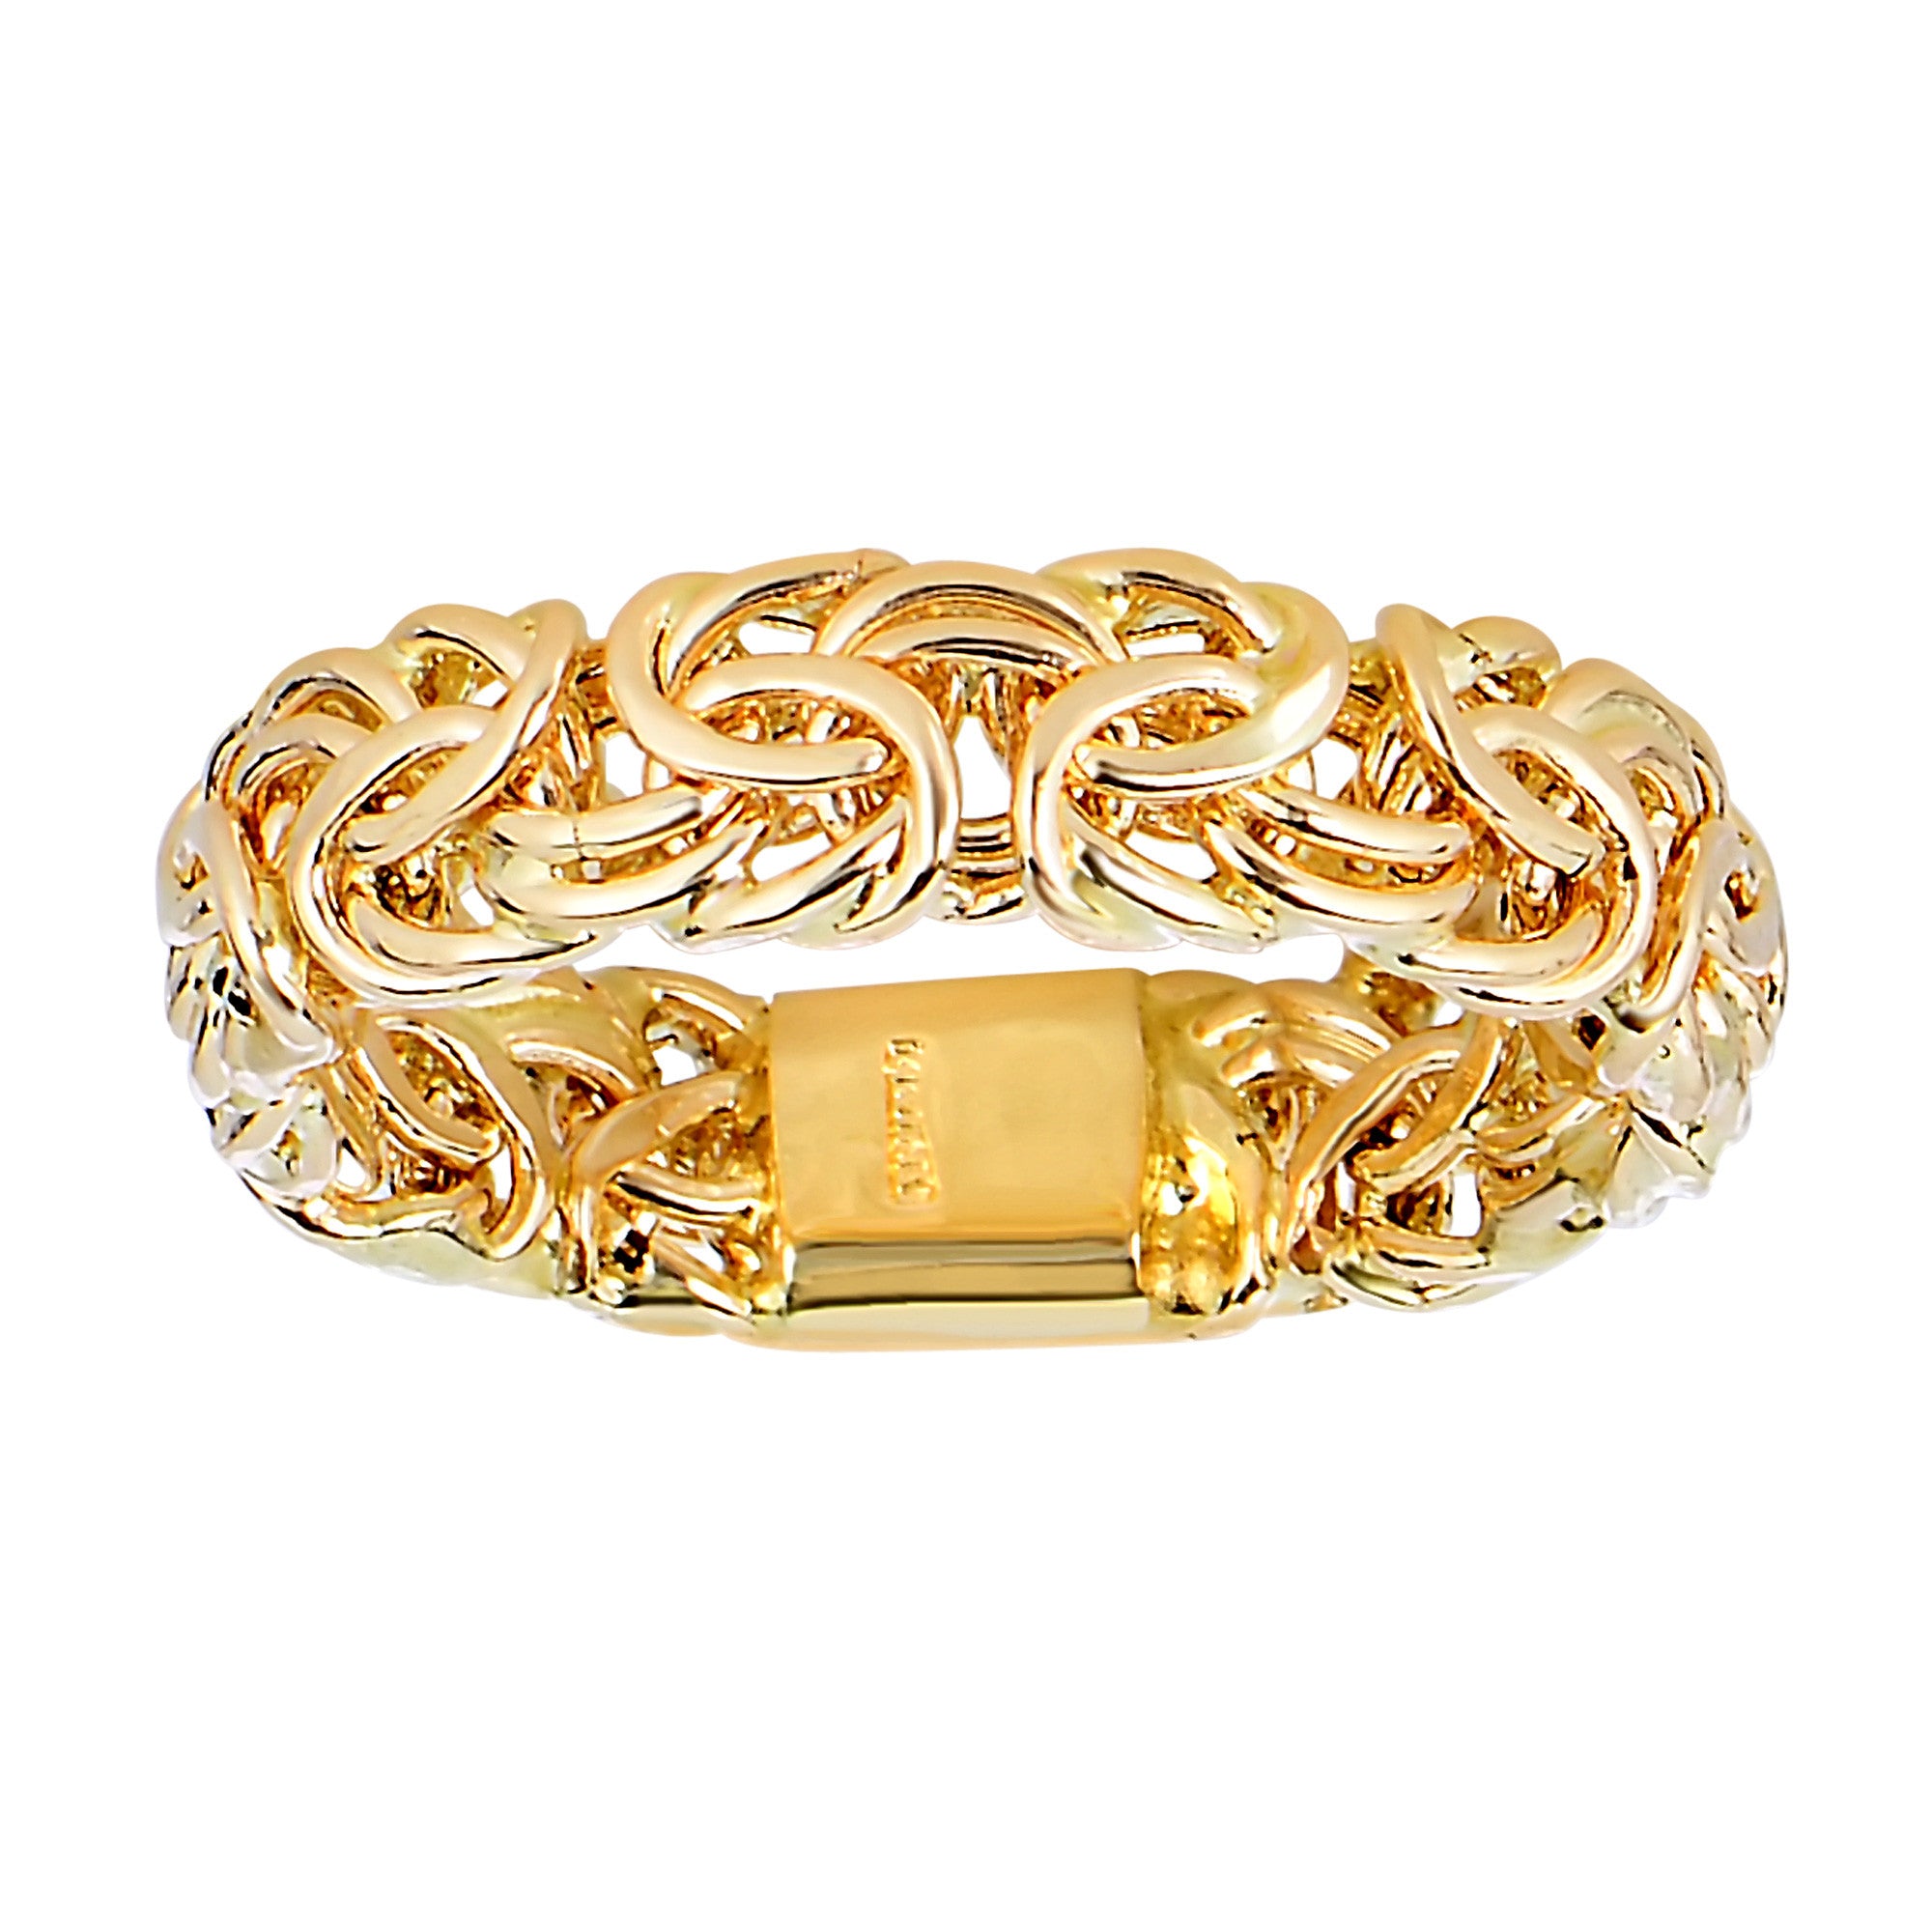 Banda de estilo bizantino de oro amarillo de 14 quilates: joyería fina de diseño de 4 mm de ancho para hombres y mujeres